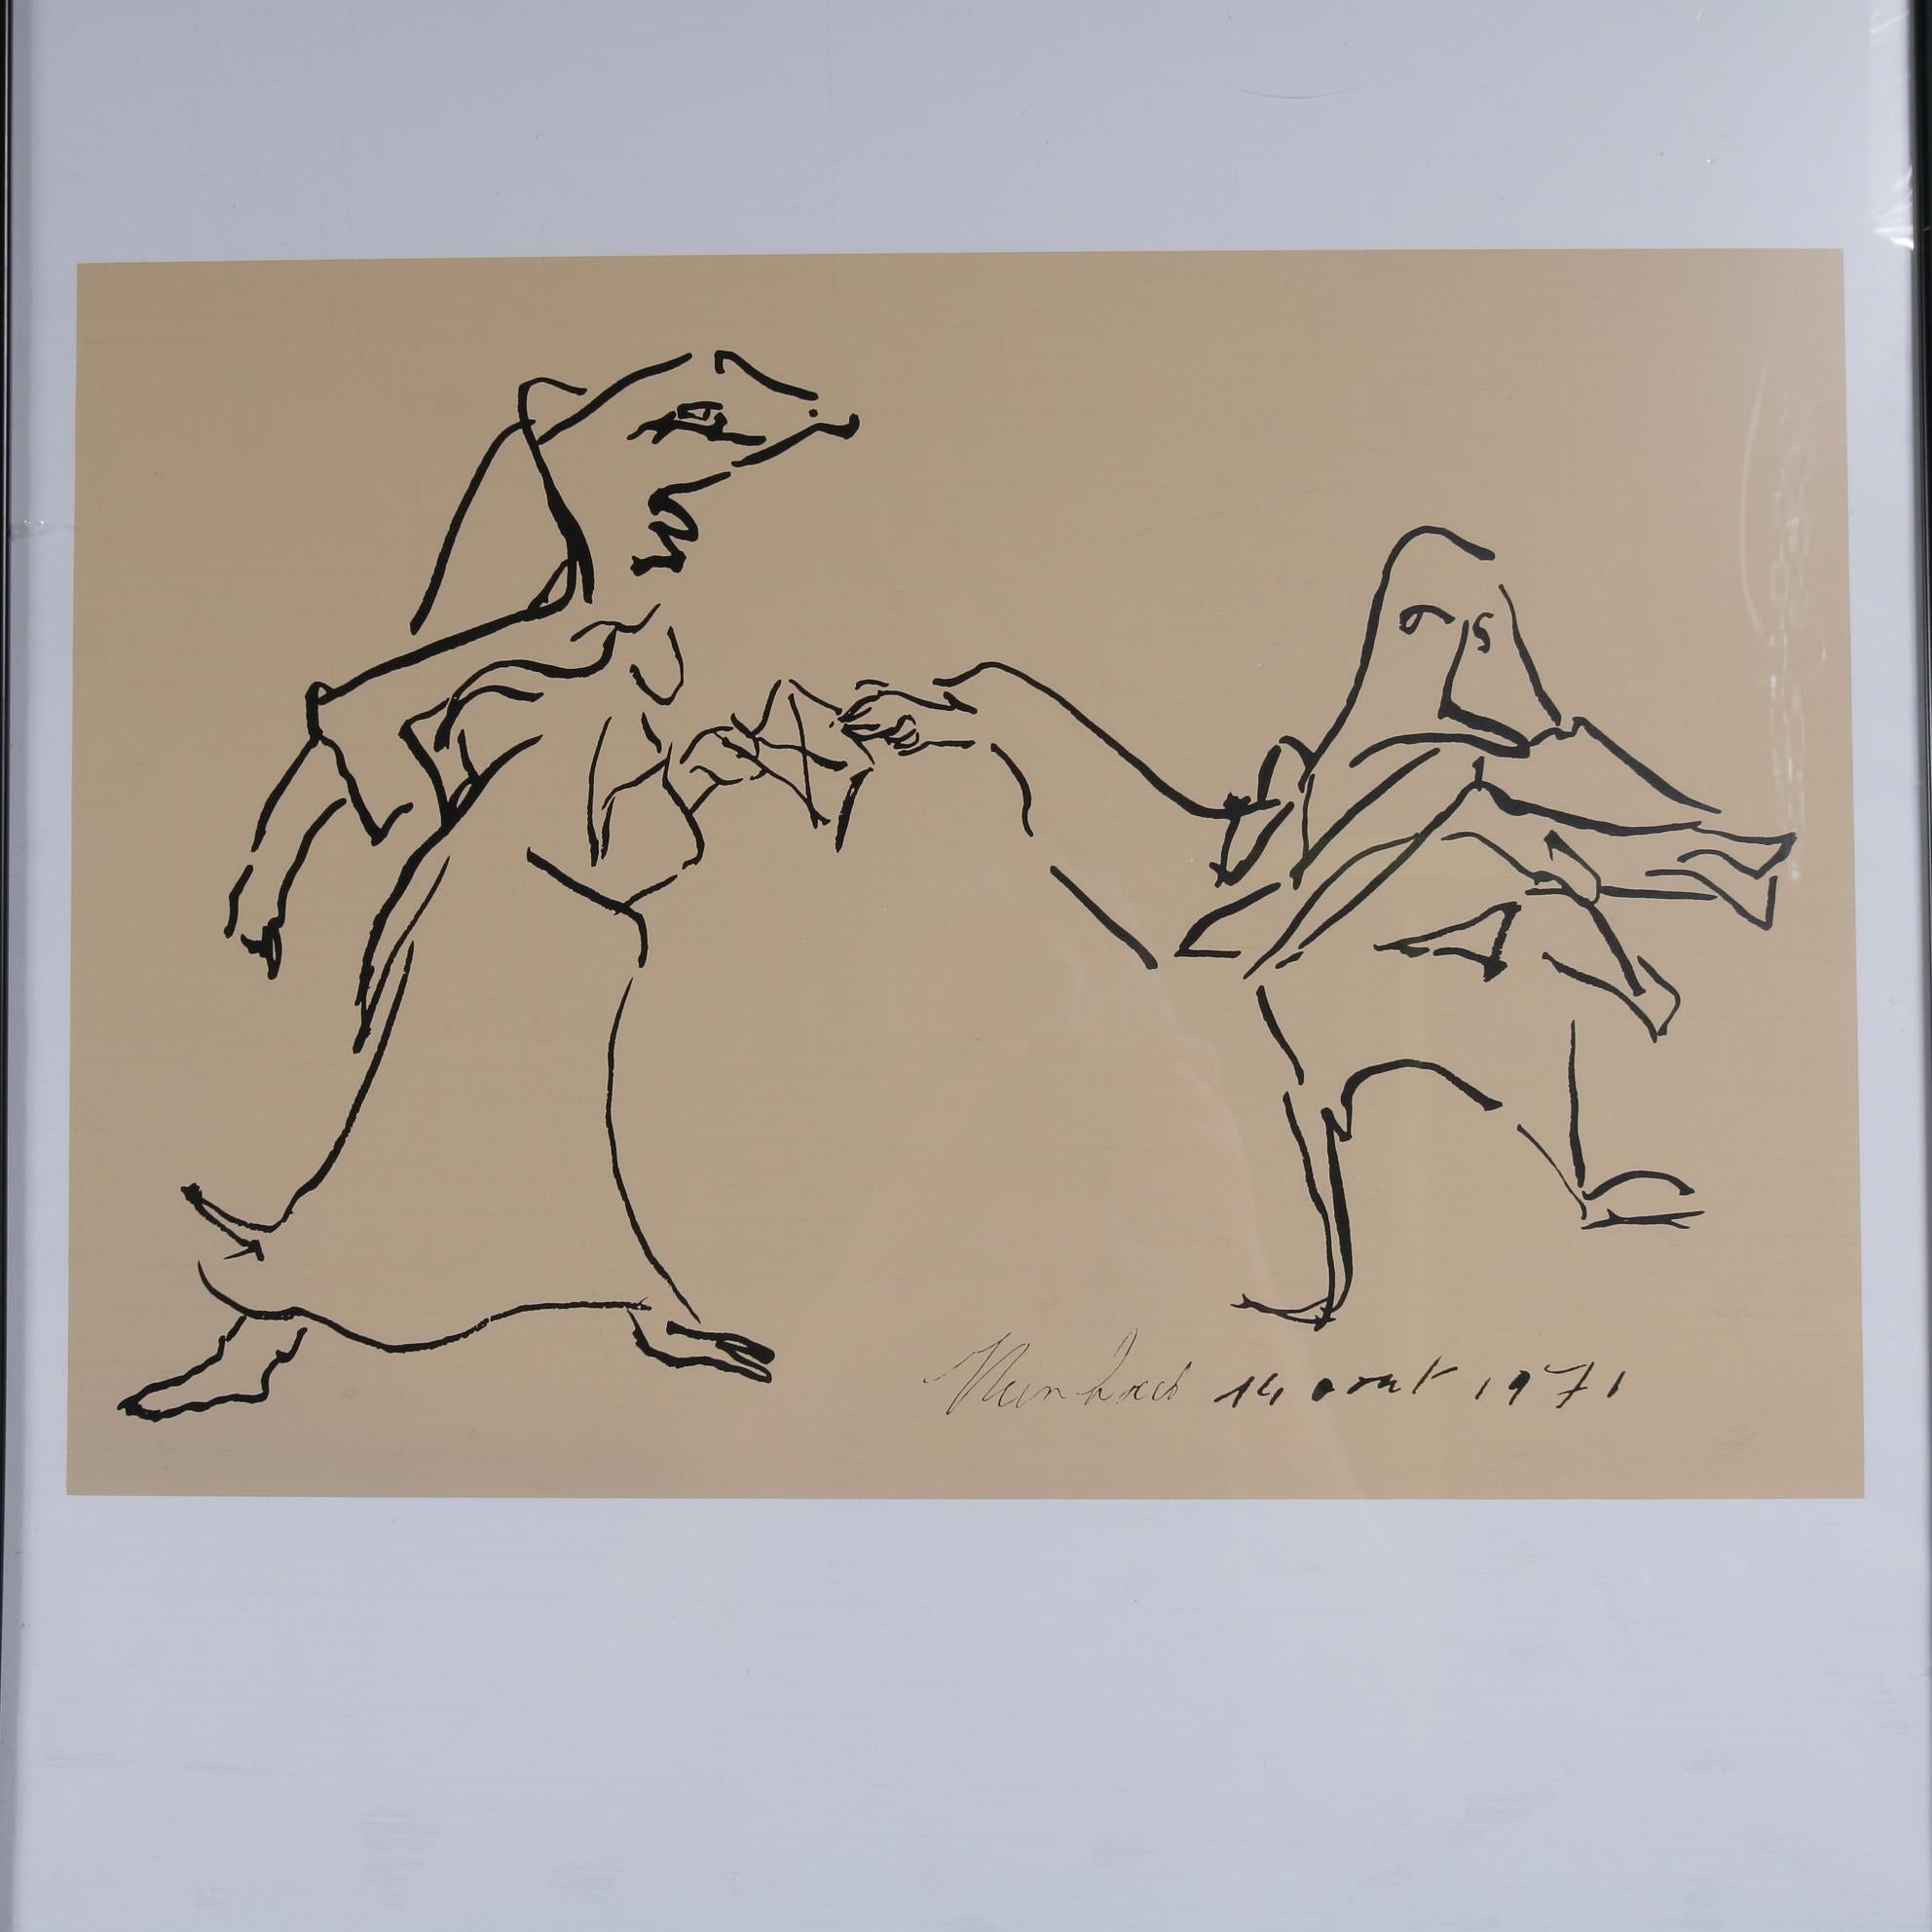 Ein schöner, seltener Siebdruck von Reinhoud d'Haese aus dem Jahr 1971.

Das Stück ist signiert und datiert und zeigt ein wunderschönes, minimalistisches Kunstwerk von zwei Personen im ikonischen Stil von d'Haese. Es ist in einem vertikalen Rahmen